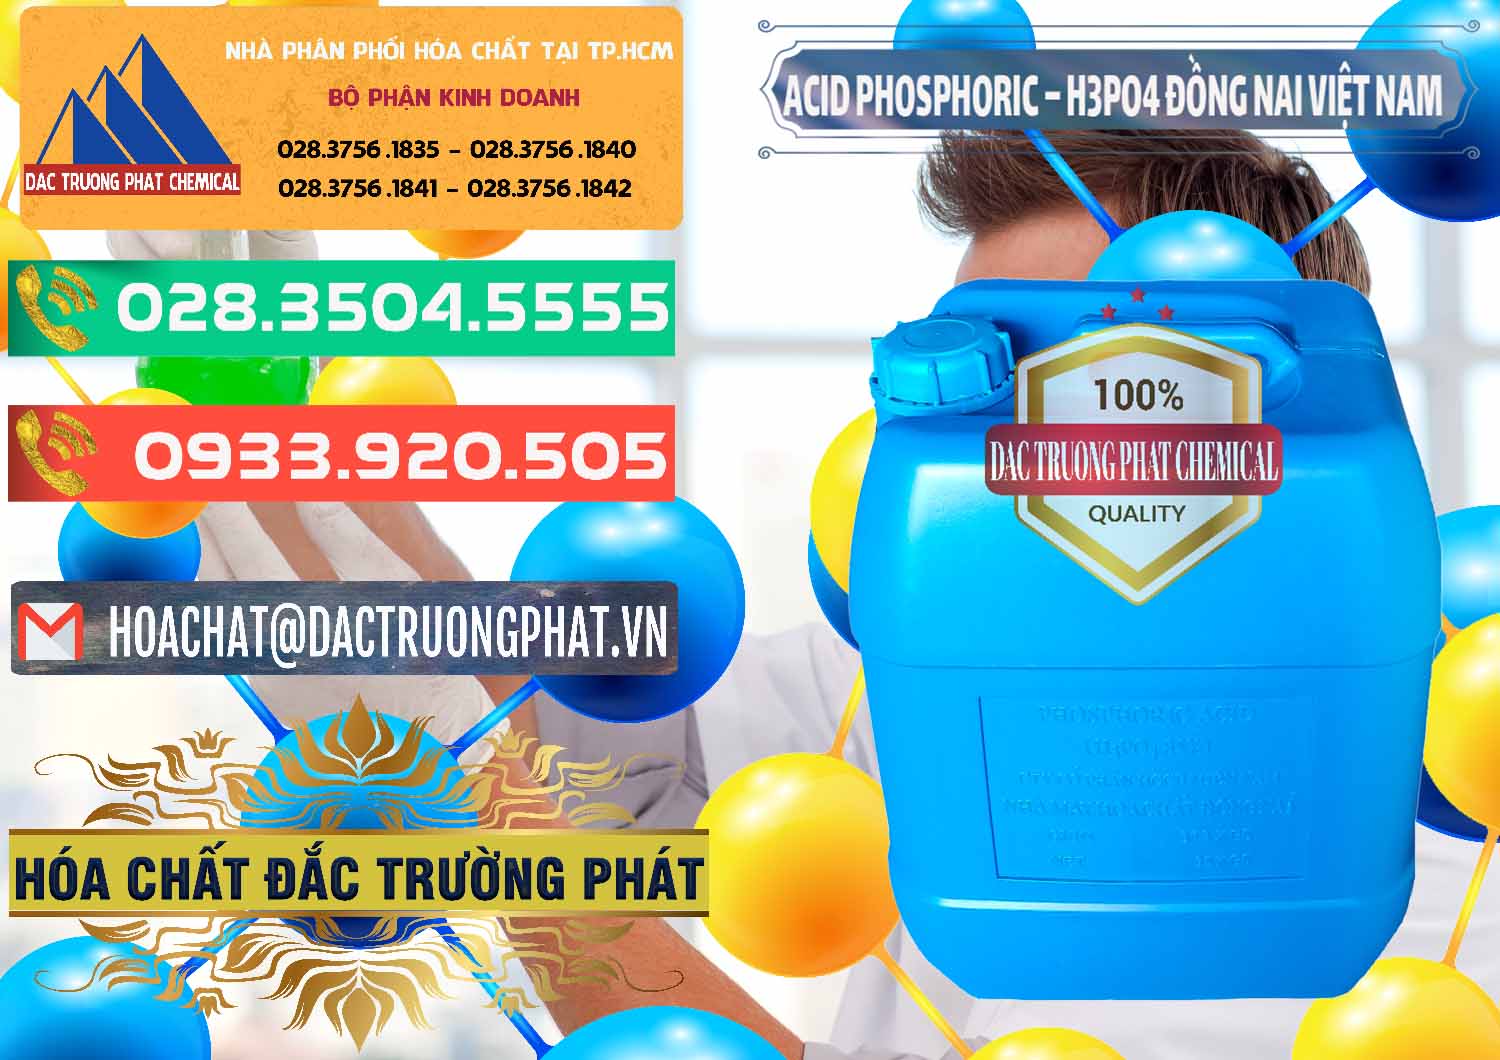 Đơn vị bán & cung cấp Acid Phosphoric – Axit Phosphoric 85% Đồng Nai Việt Nam - 0183 - Công ty chuyên cung cấp và kinh doanh hóa chất tại TP.HCM - congtyhoachat.com.vn